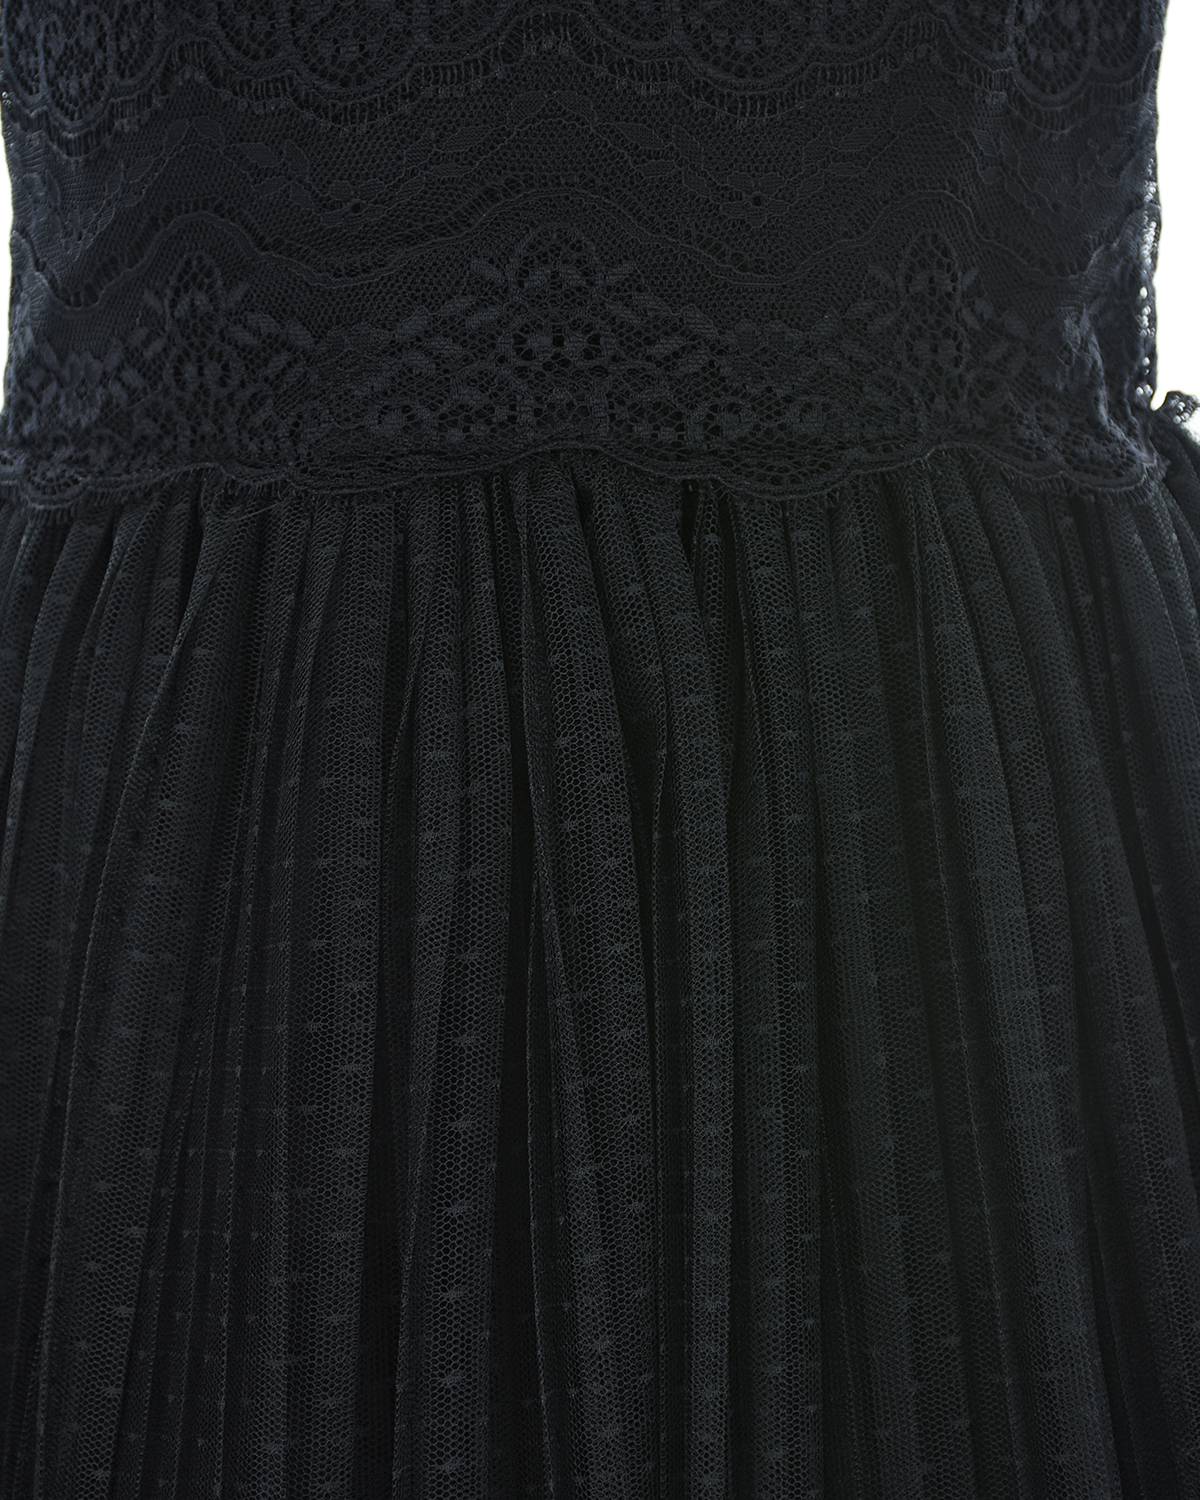 Черное платье с кружевной отделкой Aletta детское - фото 3